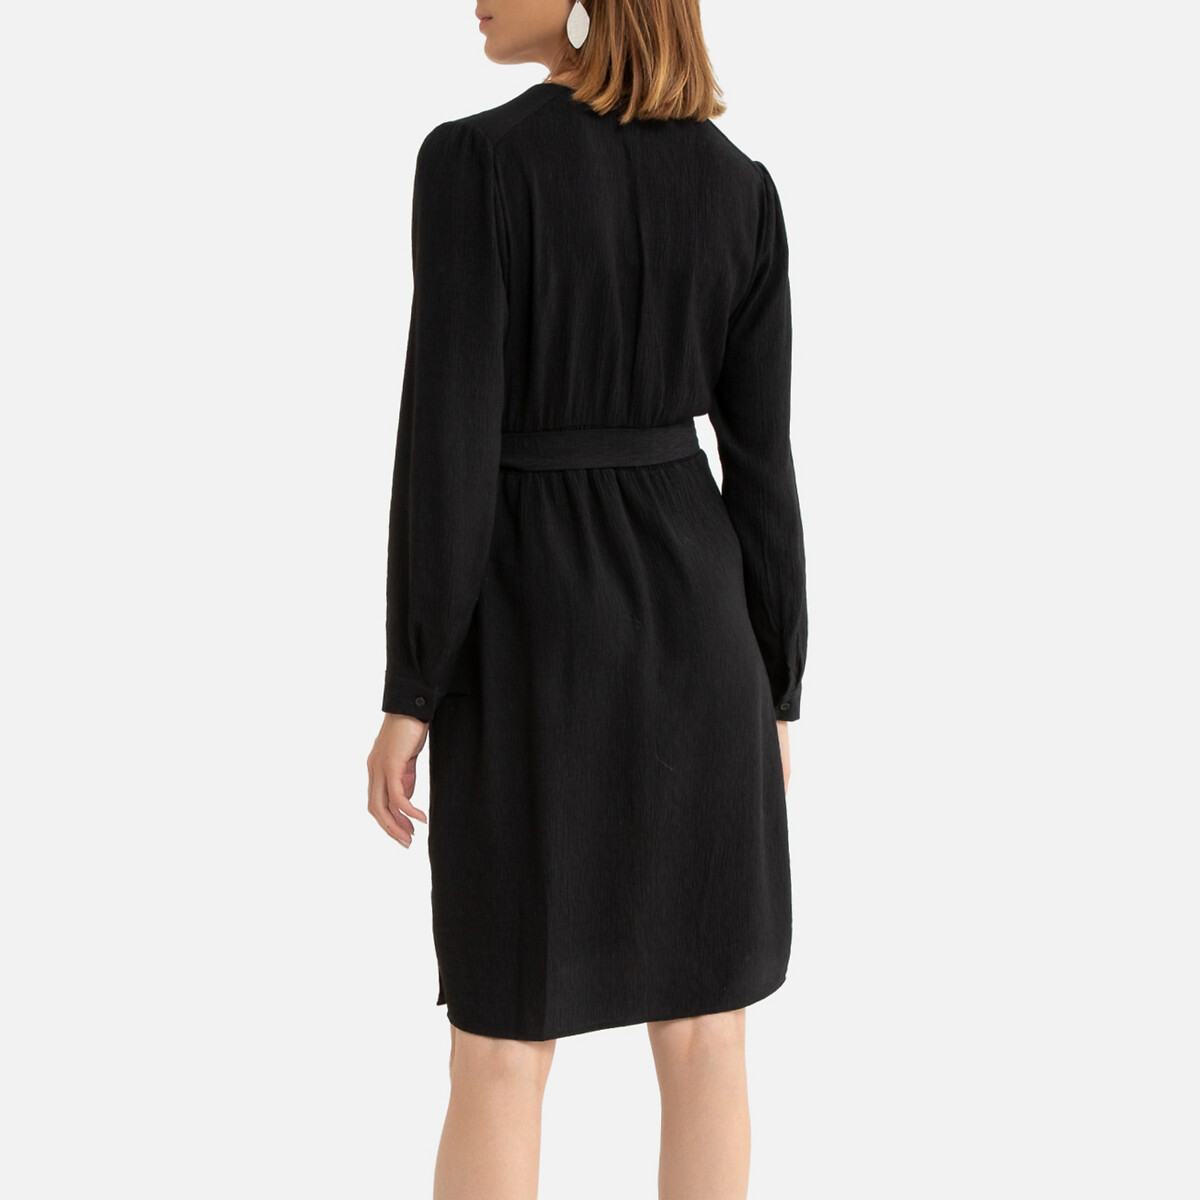 Платье La Redoute С запахом короткое длинные рукава 0(XS) черный, размер 0(XS) С запахом короткое длинные рукава 0(XS) черный - фото 4